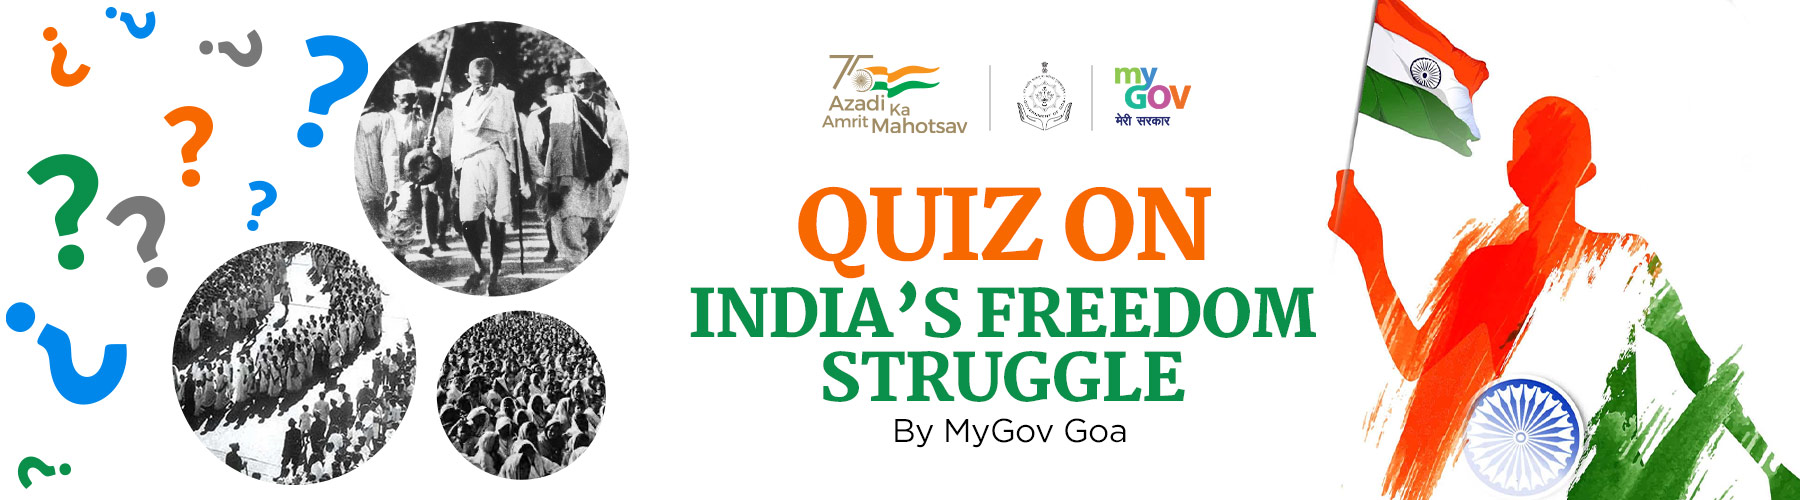 Quiz on India’s Freedom Struggle by MyGov Goa